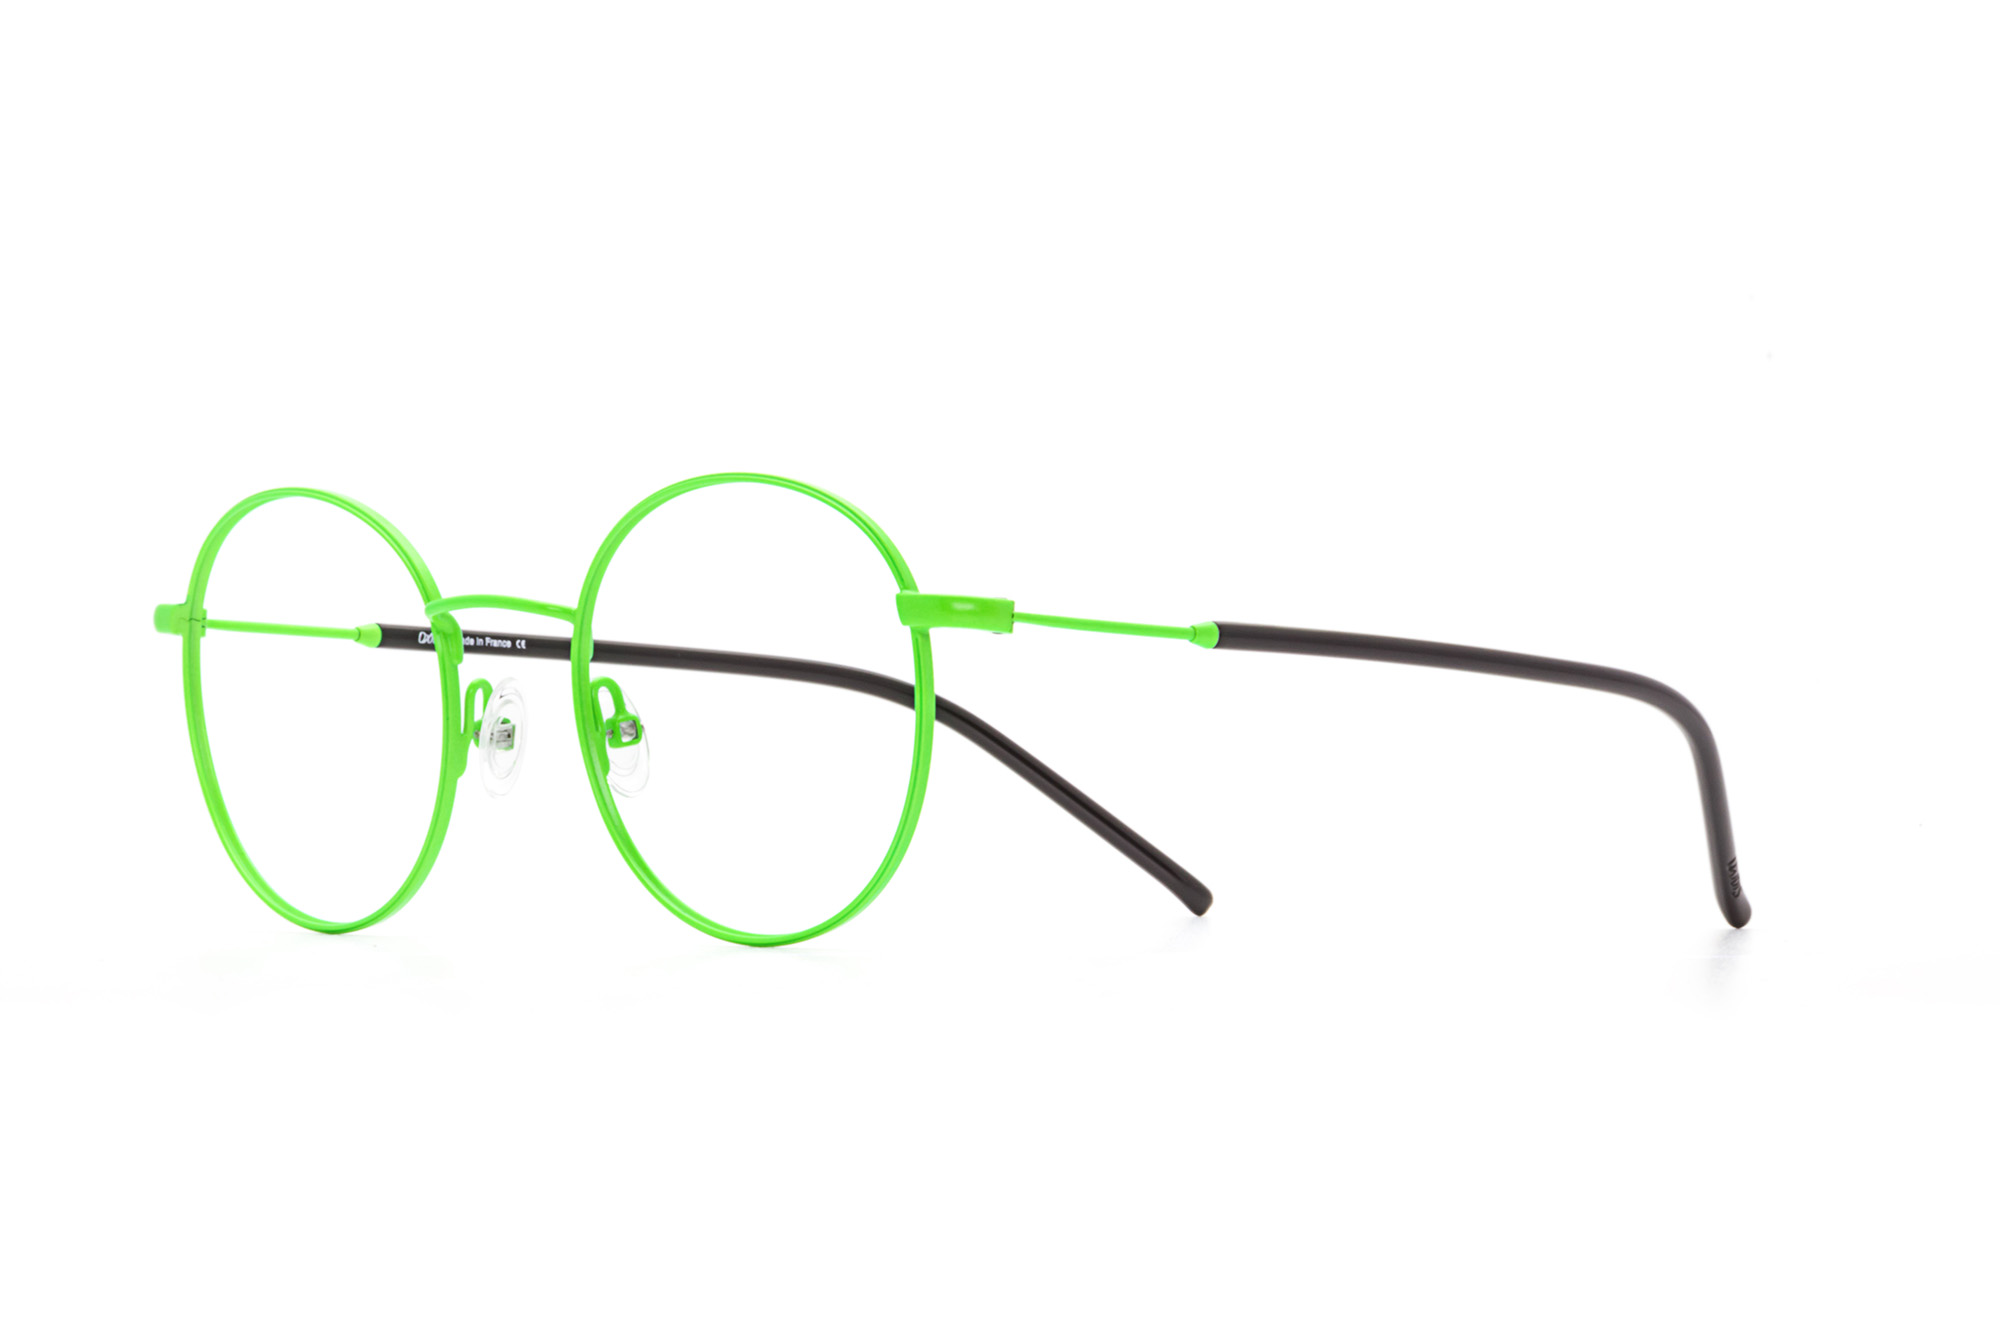 Oxibis Iggy 4 IG4C13 49 küçük ekartman neon yeşil renkli yuvarlak model numaralı unisex optik gözlük çerçevesi